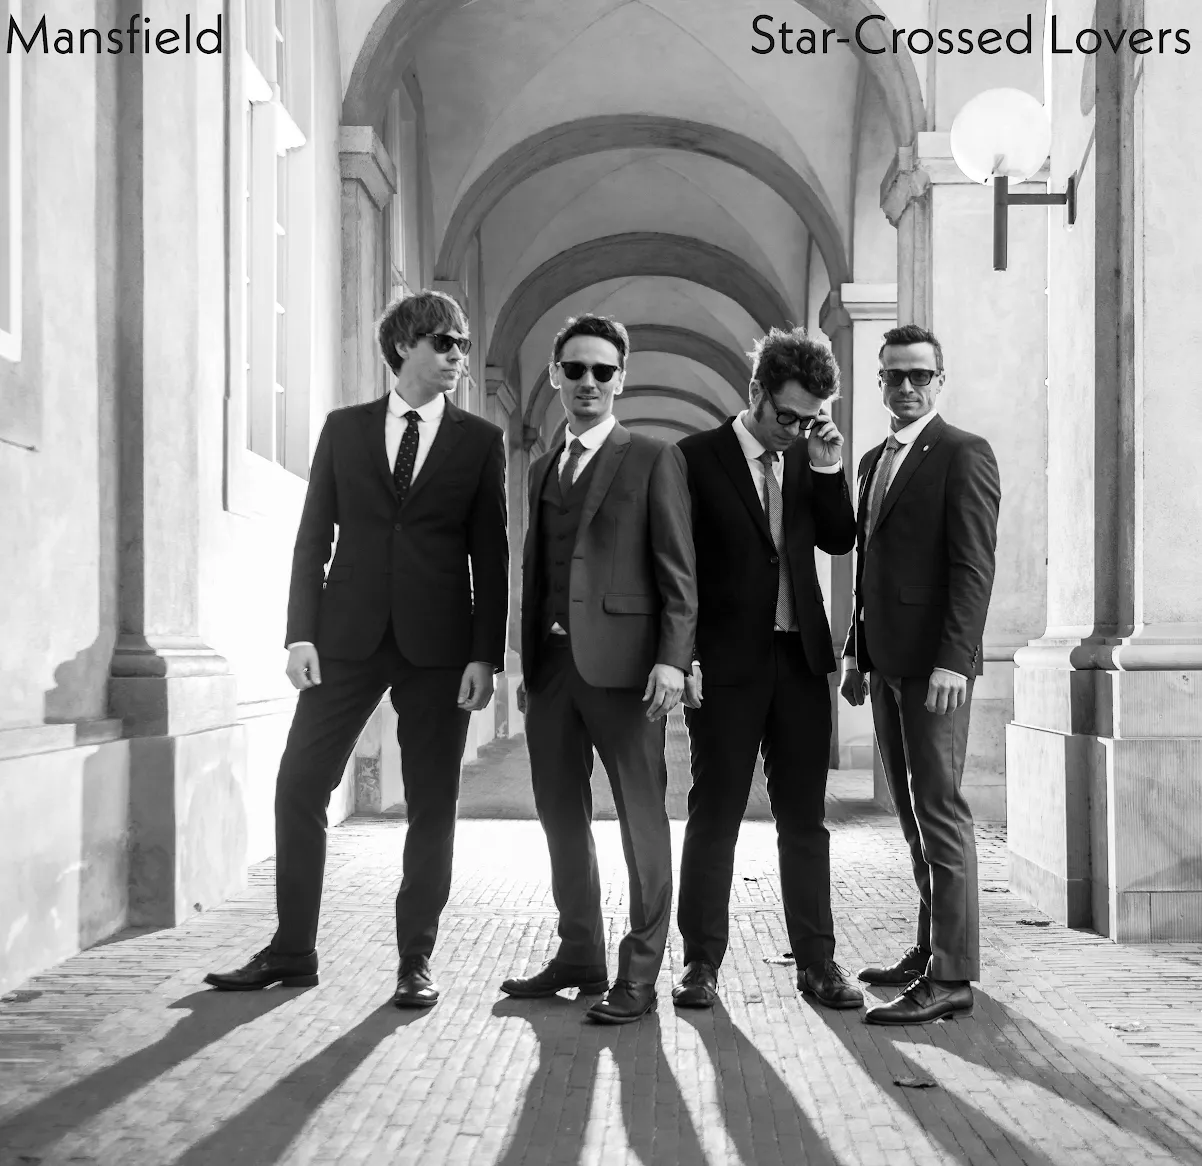 Star-Crossed Lovers - Mansfield